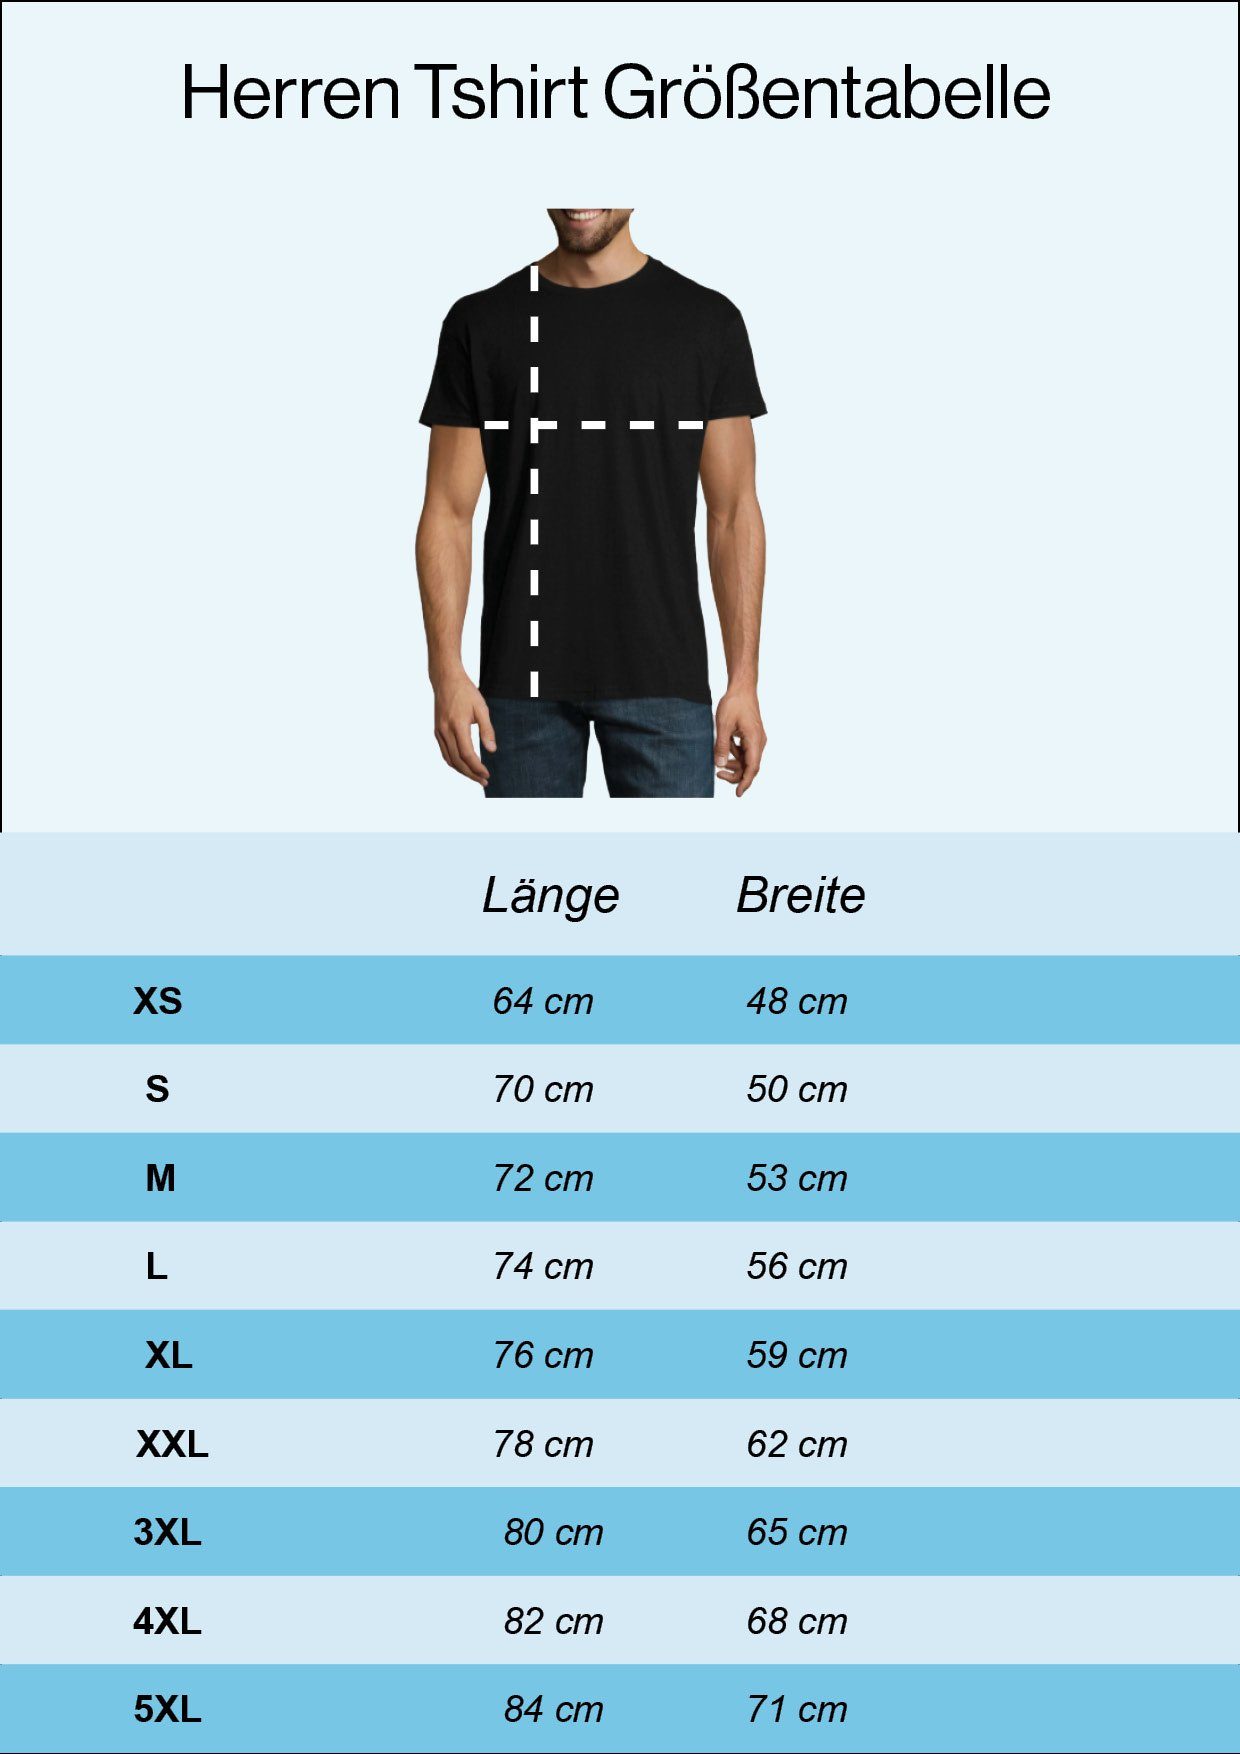 Designz Love Herren Schwarz trendigem Bayern Liebe Frontprint T-Shirt mit Youth Shirt